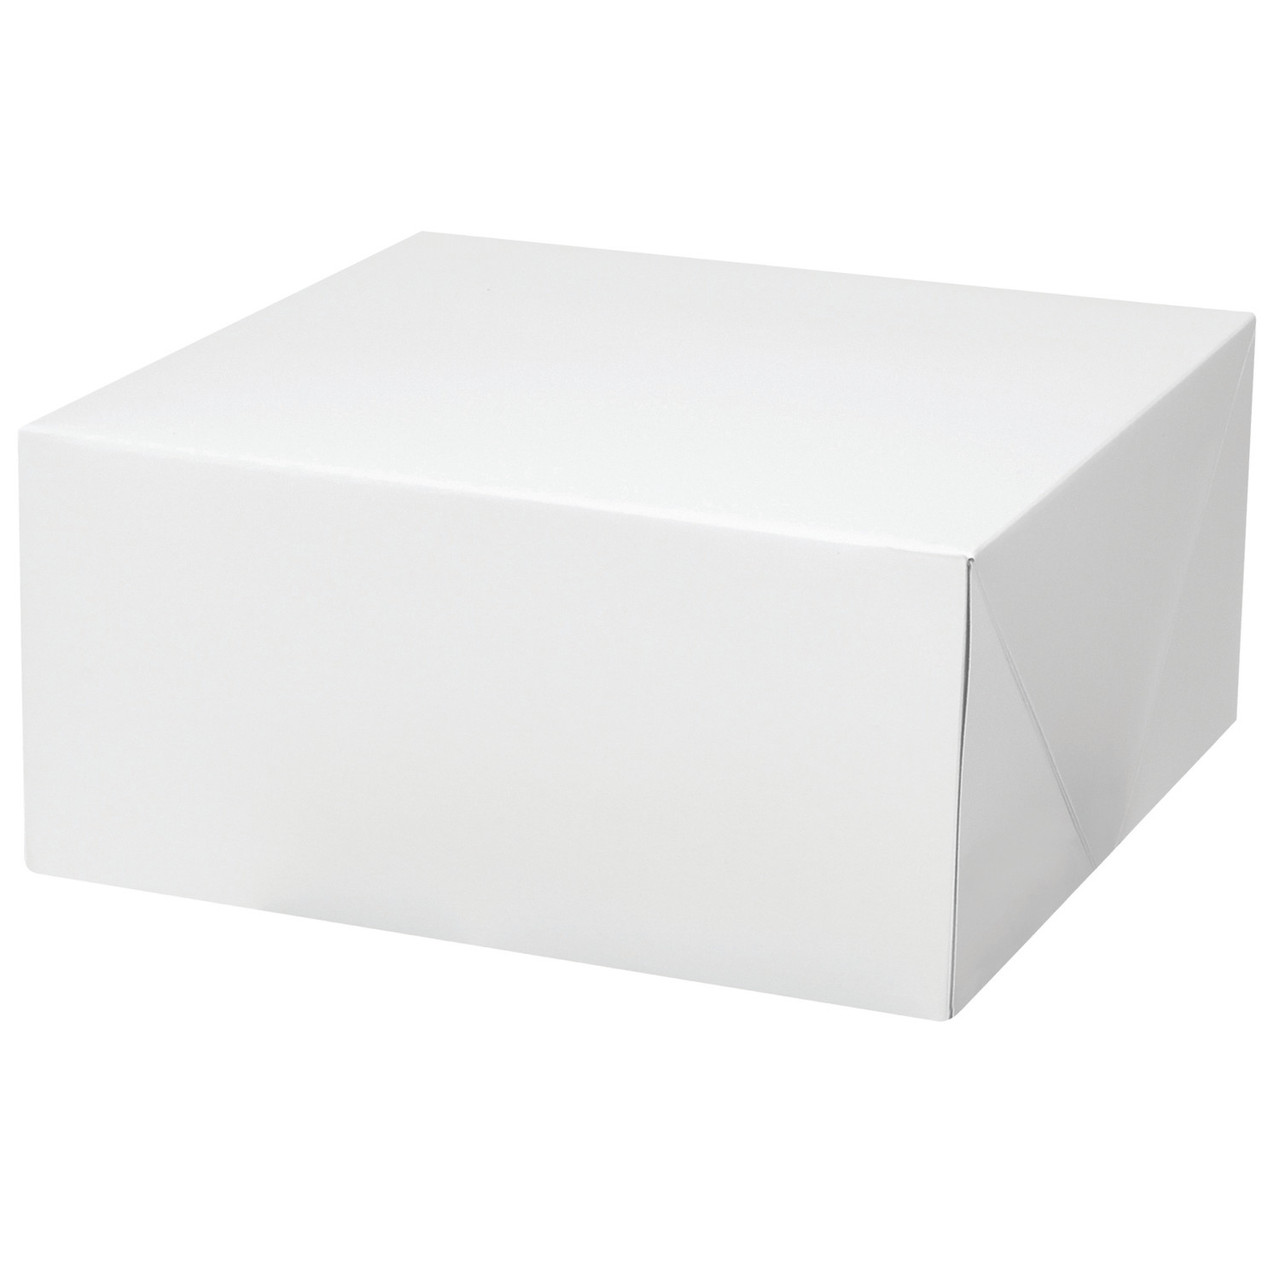 caja para pastel corrugada cuadrada blanca, 2 unidades wilton